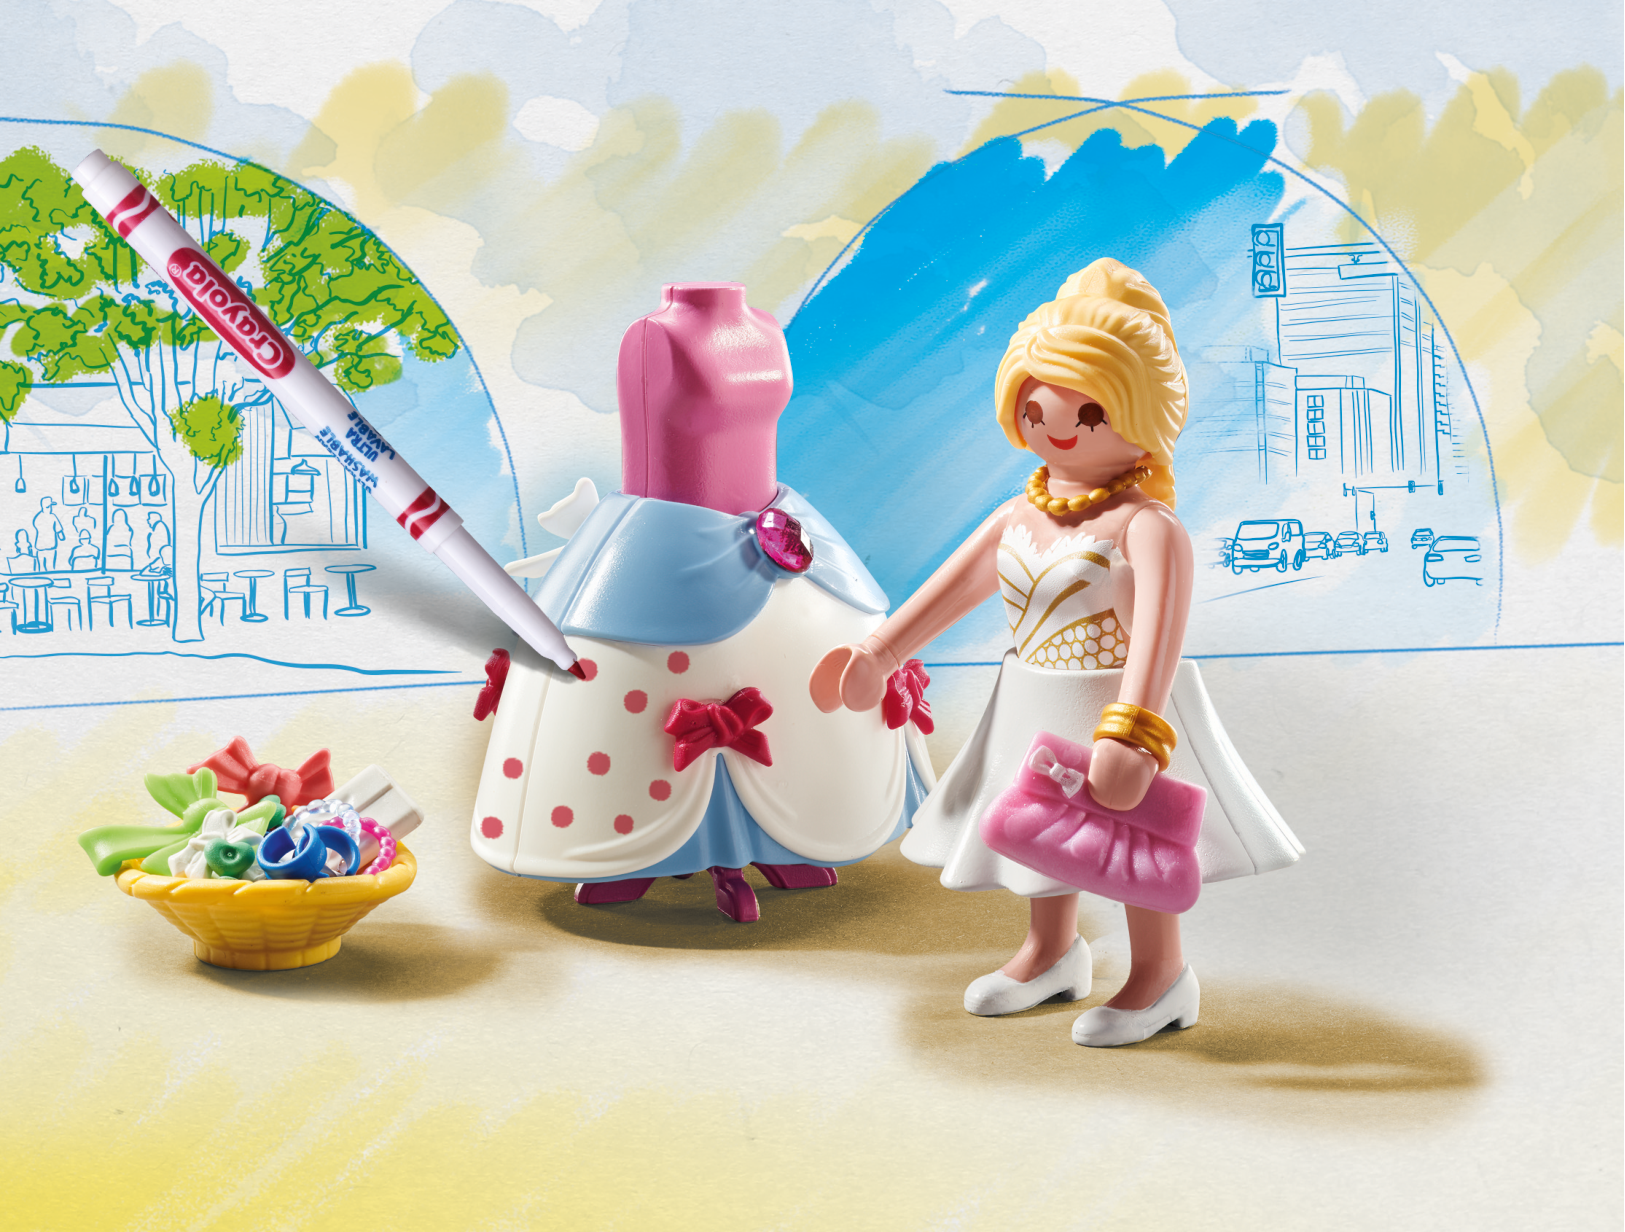 Playmobil color 71374 - fashion designer per bambini dai 4 anni - Playmobil